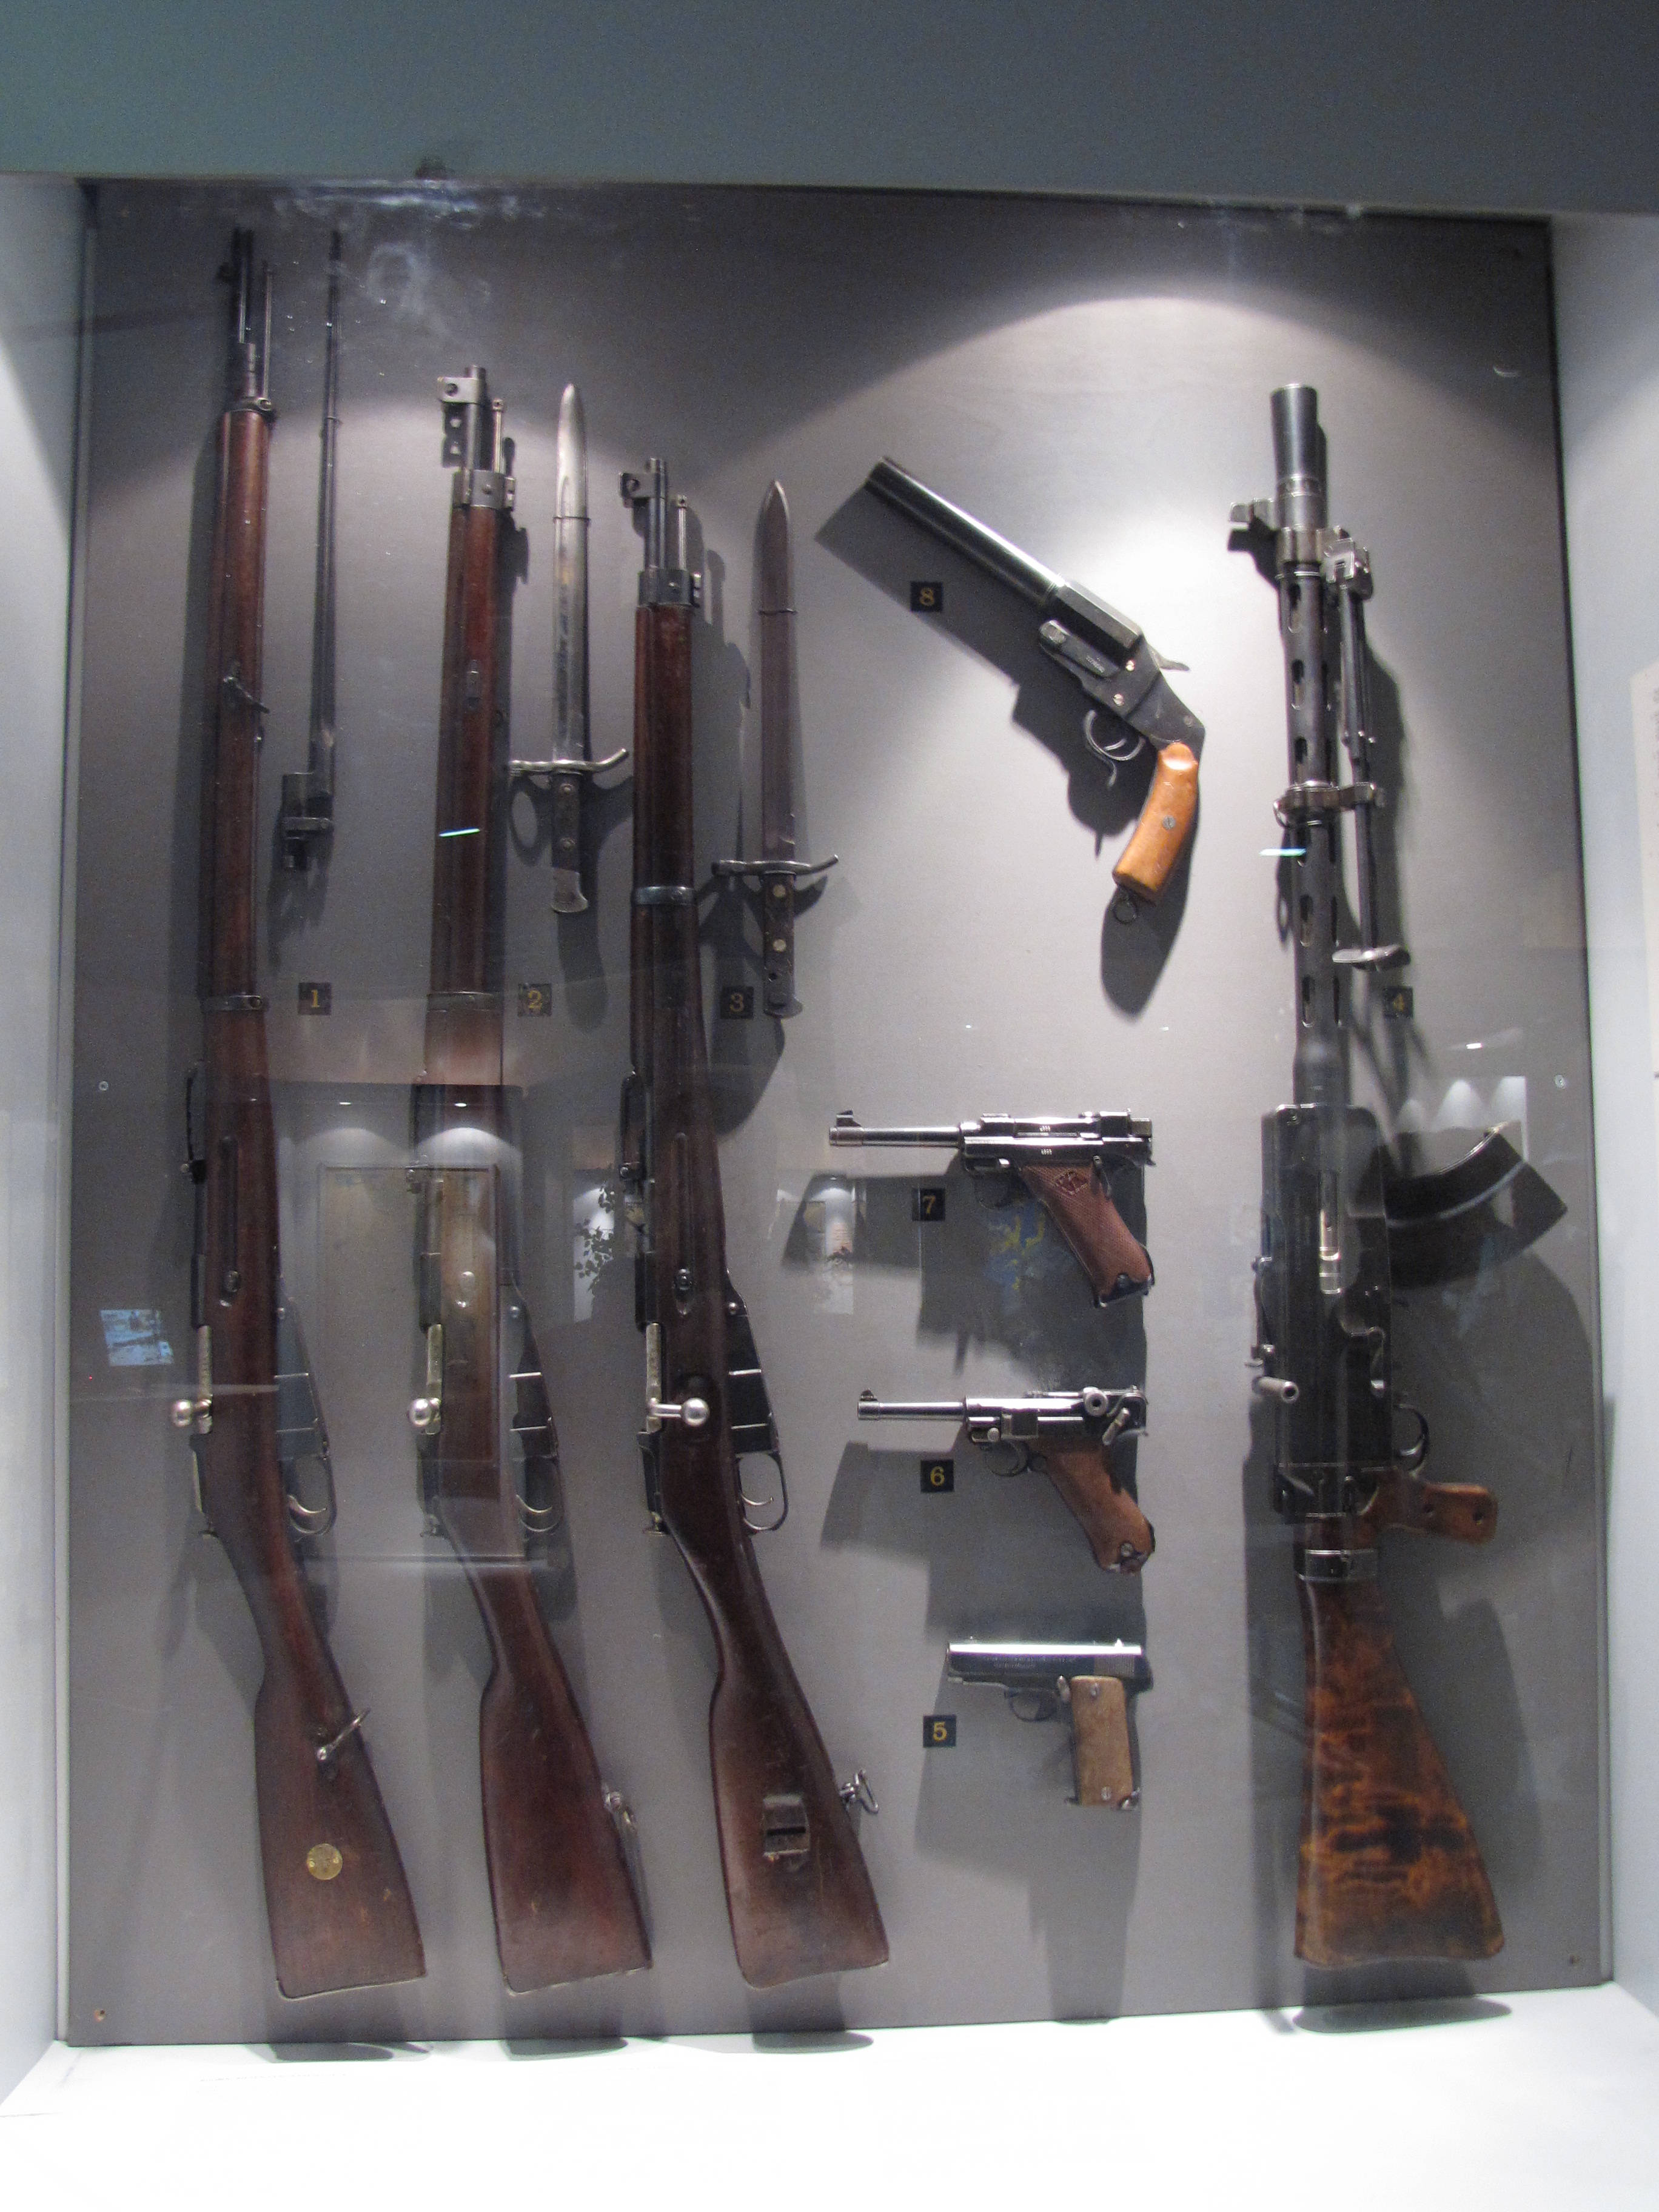 冲锋枪和轻机枪分班搭配1939年芬兰步枪连人员武器编制